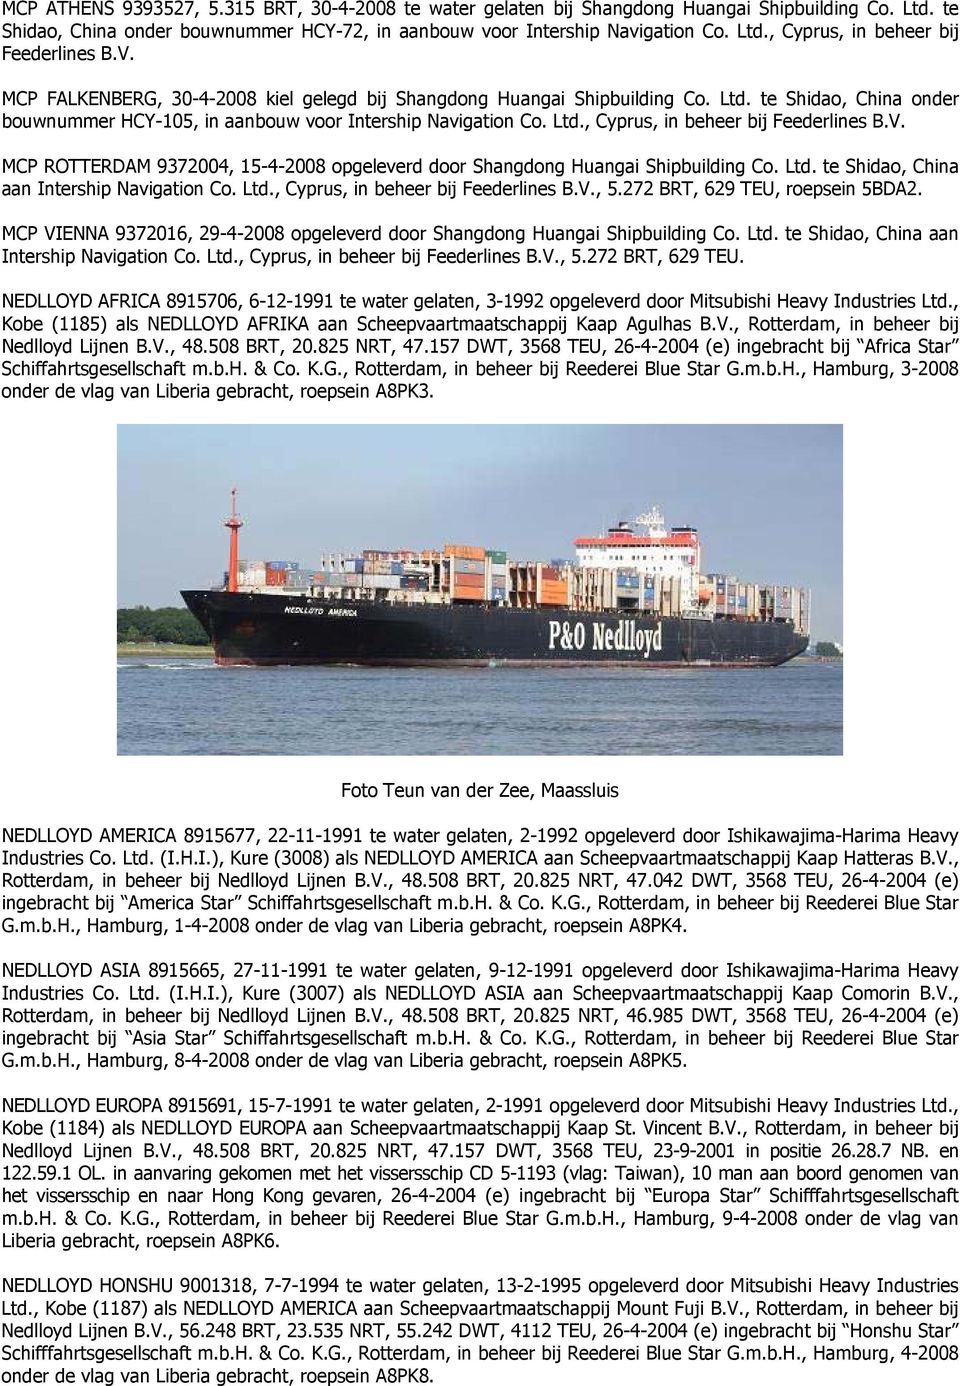 V. MCP ROTTERDAM 9372004, 15-4-2008 opgeleverd door Shangdong Huangai Shipbuilding Co. Ltd. te Shidao, China aan Intership Navigation Co. Ltd., Cyprus, in beheer bij Feederlines B.V., 5.